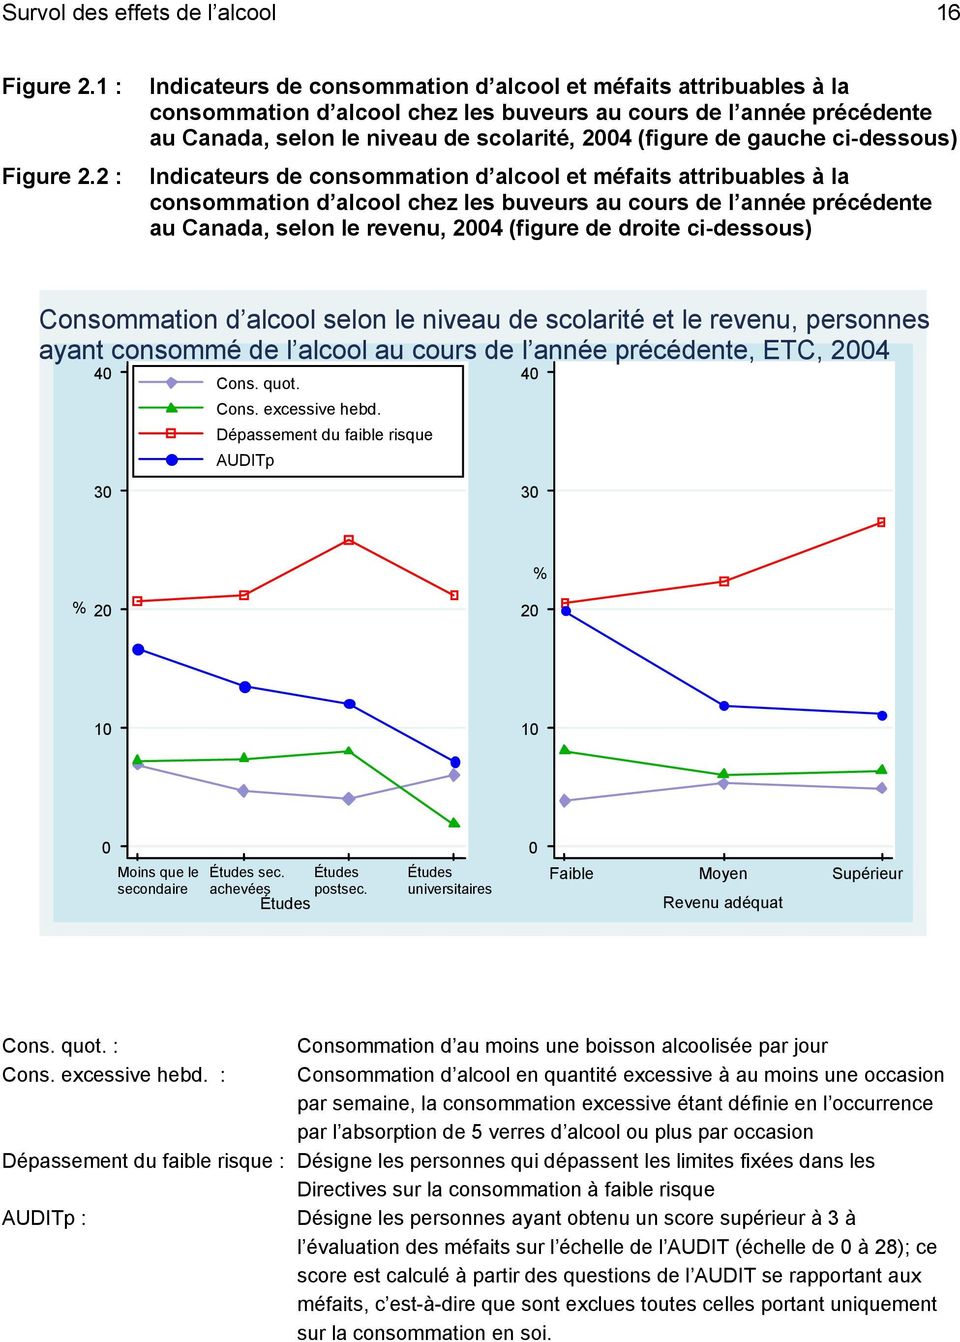 gauche ci-dessous) Indicateurs de consommation d alcool et méfaits attribuables à la consommation d alcool chez les buveurs au cours de l année précédente au Canada, selon le revenu, 2004 (figure de